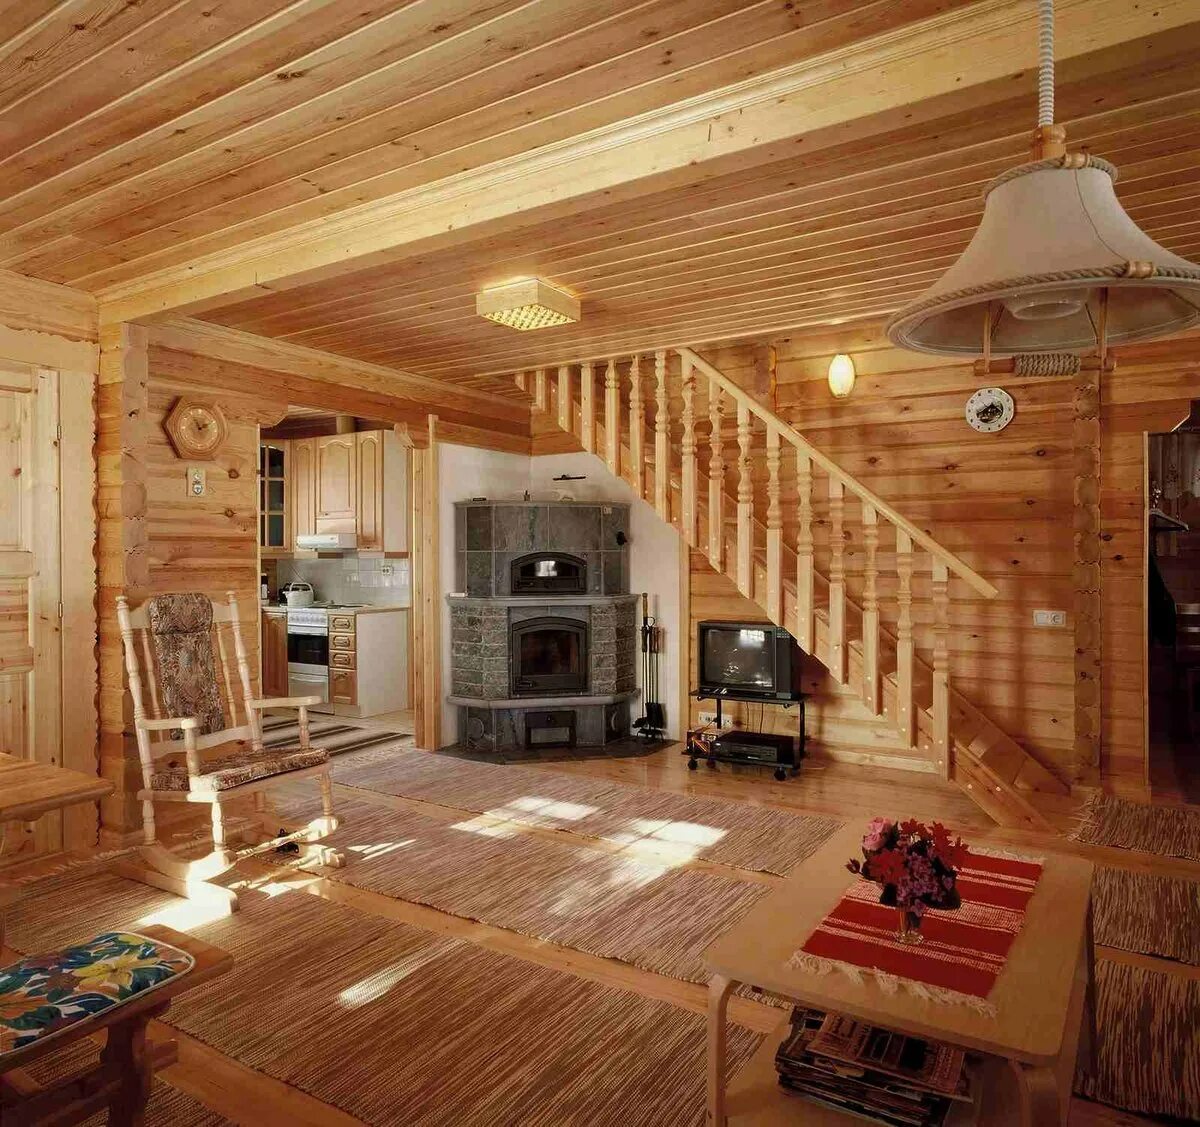 Обычный дом внутри. Интерьер в деревянном доме. Деревянный дом внутри. Деревянный дом интерьер внутри. Дома деревянные изнутри.